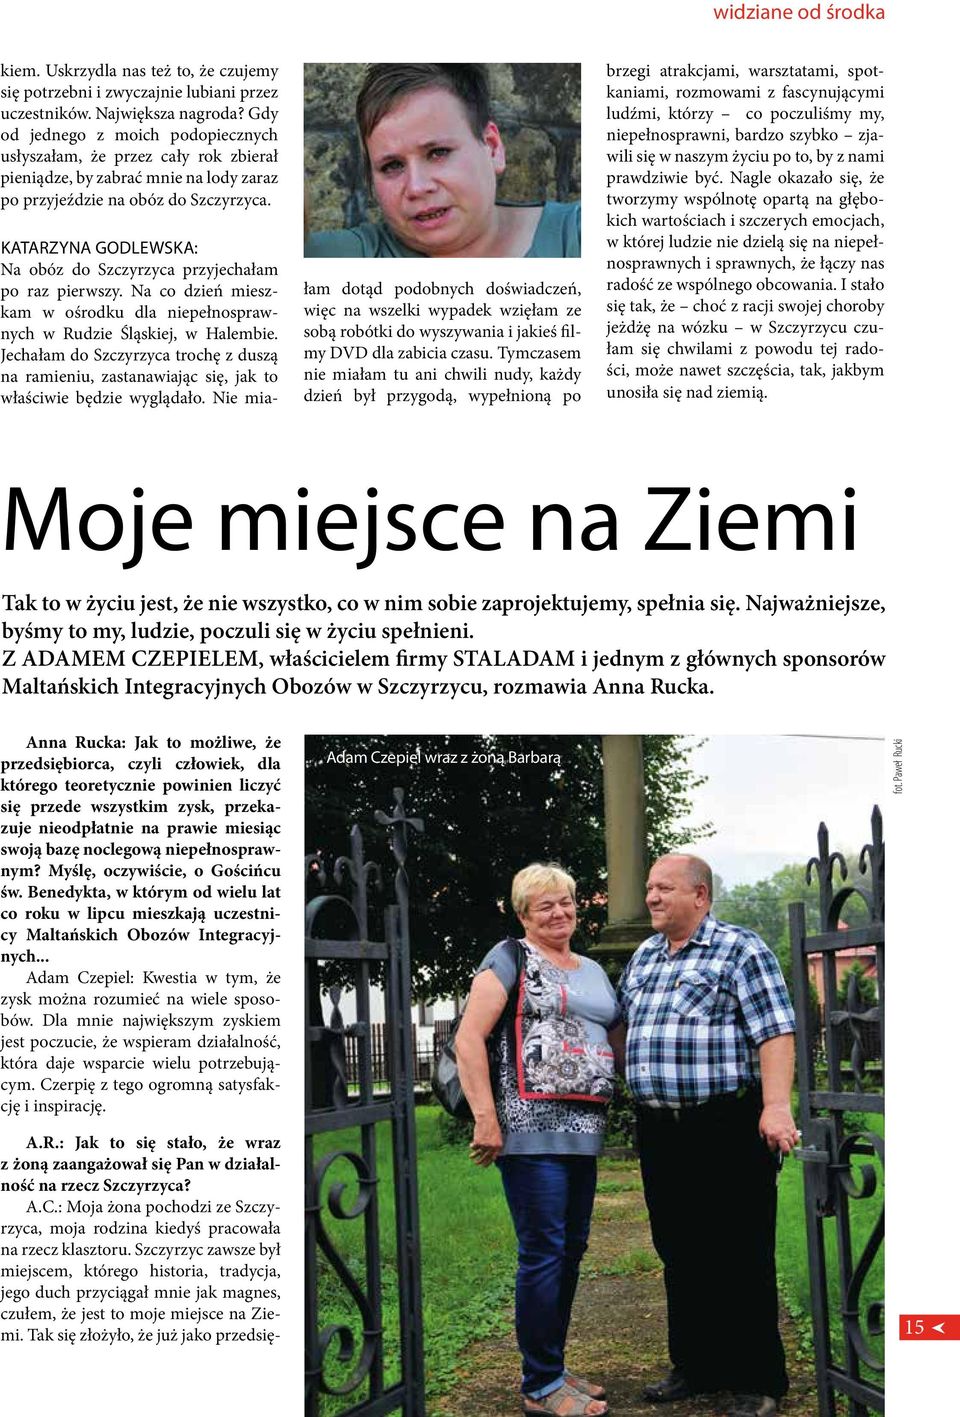 Katarzyna Godlewska: Na obóz do Szczyrzyca przyjechałam po raz pierwszy. Na co dzień mieszkam w ośrodku dla niepełnosprawnych w Rudzie Śląskiej, w Halembie.